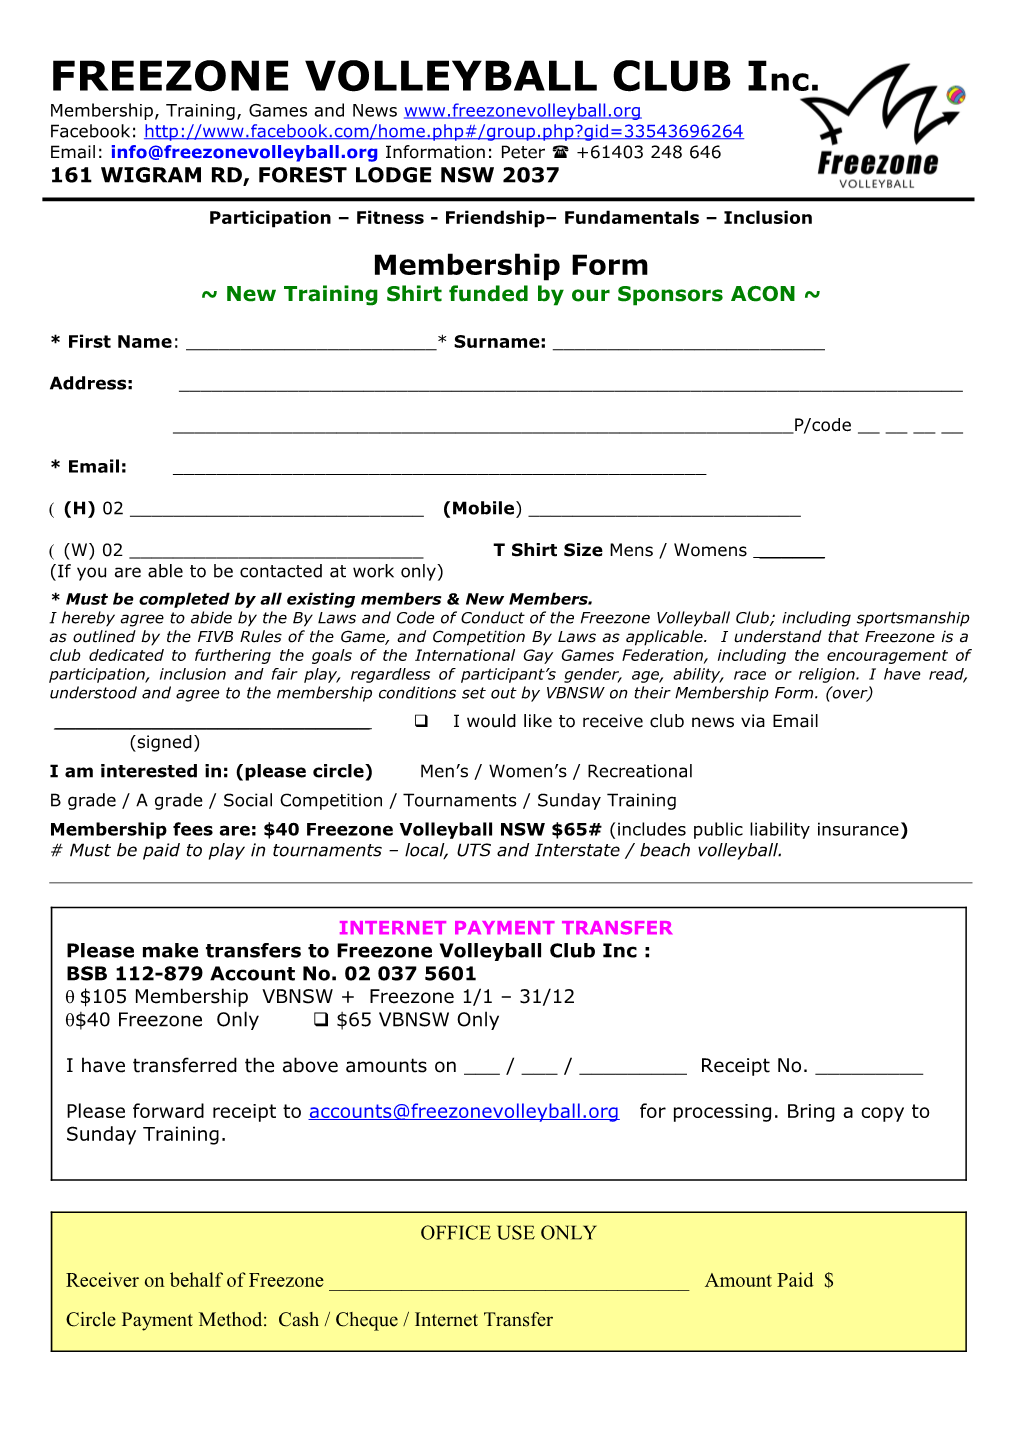 Membership Renewal Form